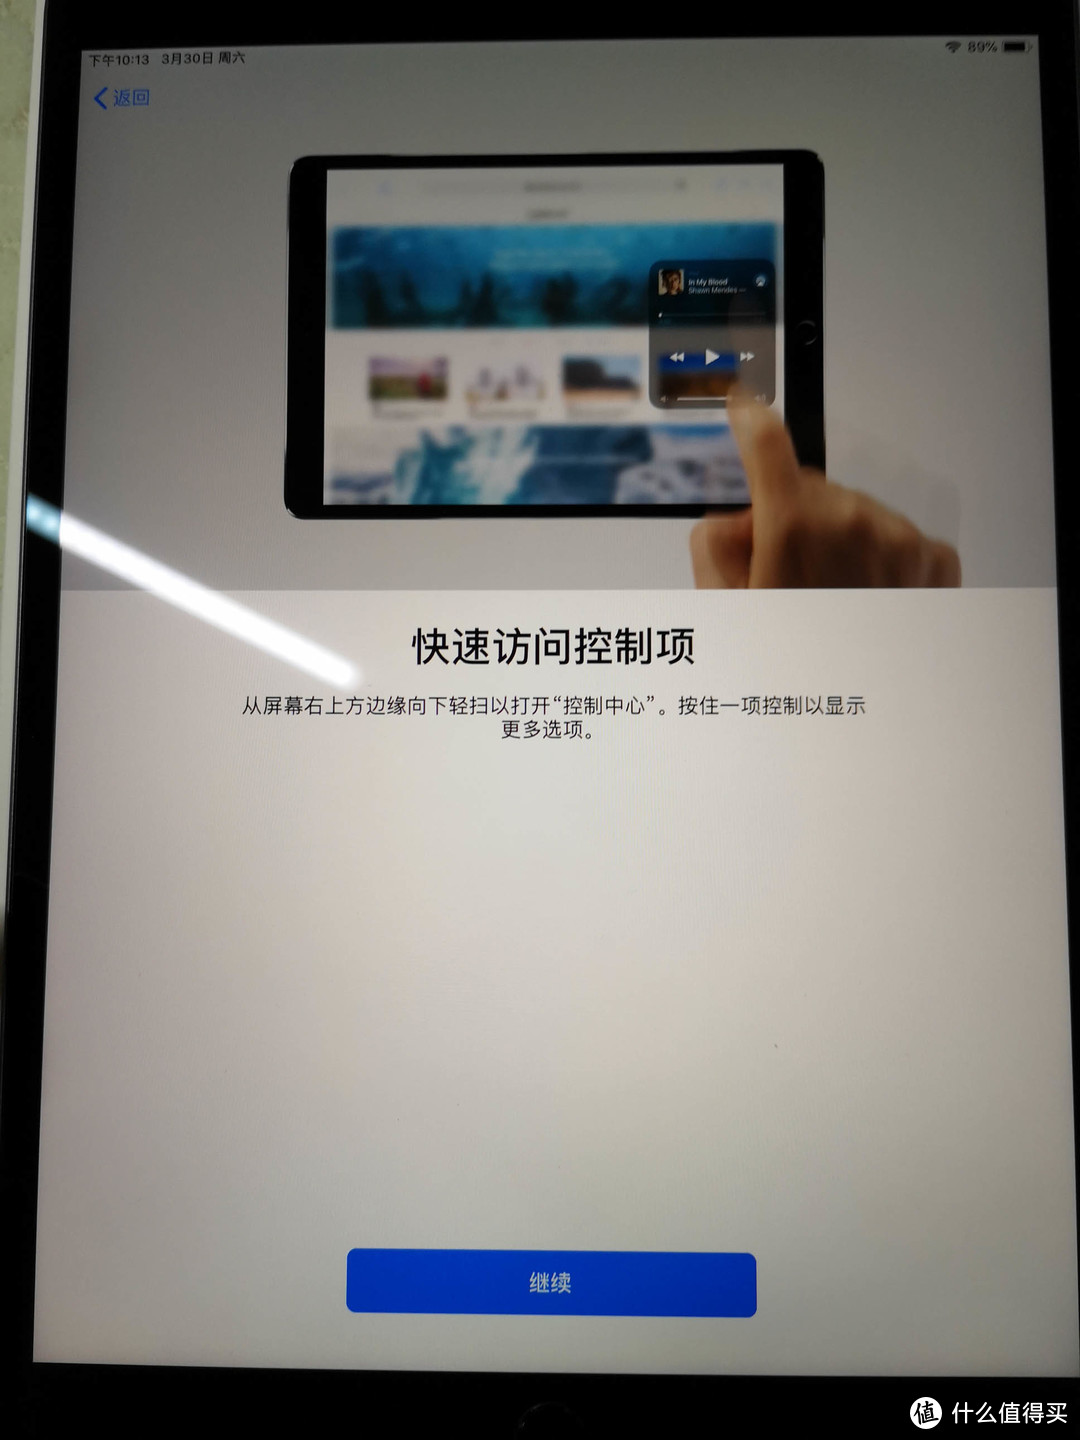 久违的苹果：iPad Air 2019 开箱晒单